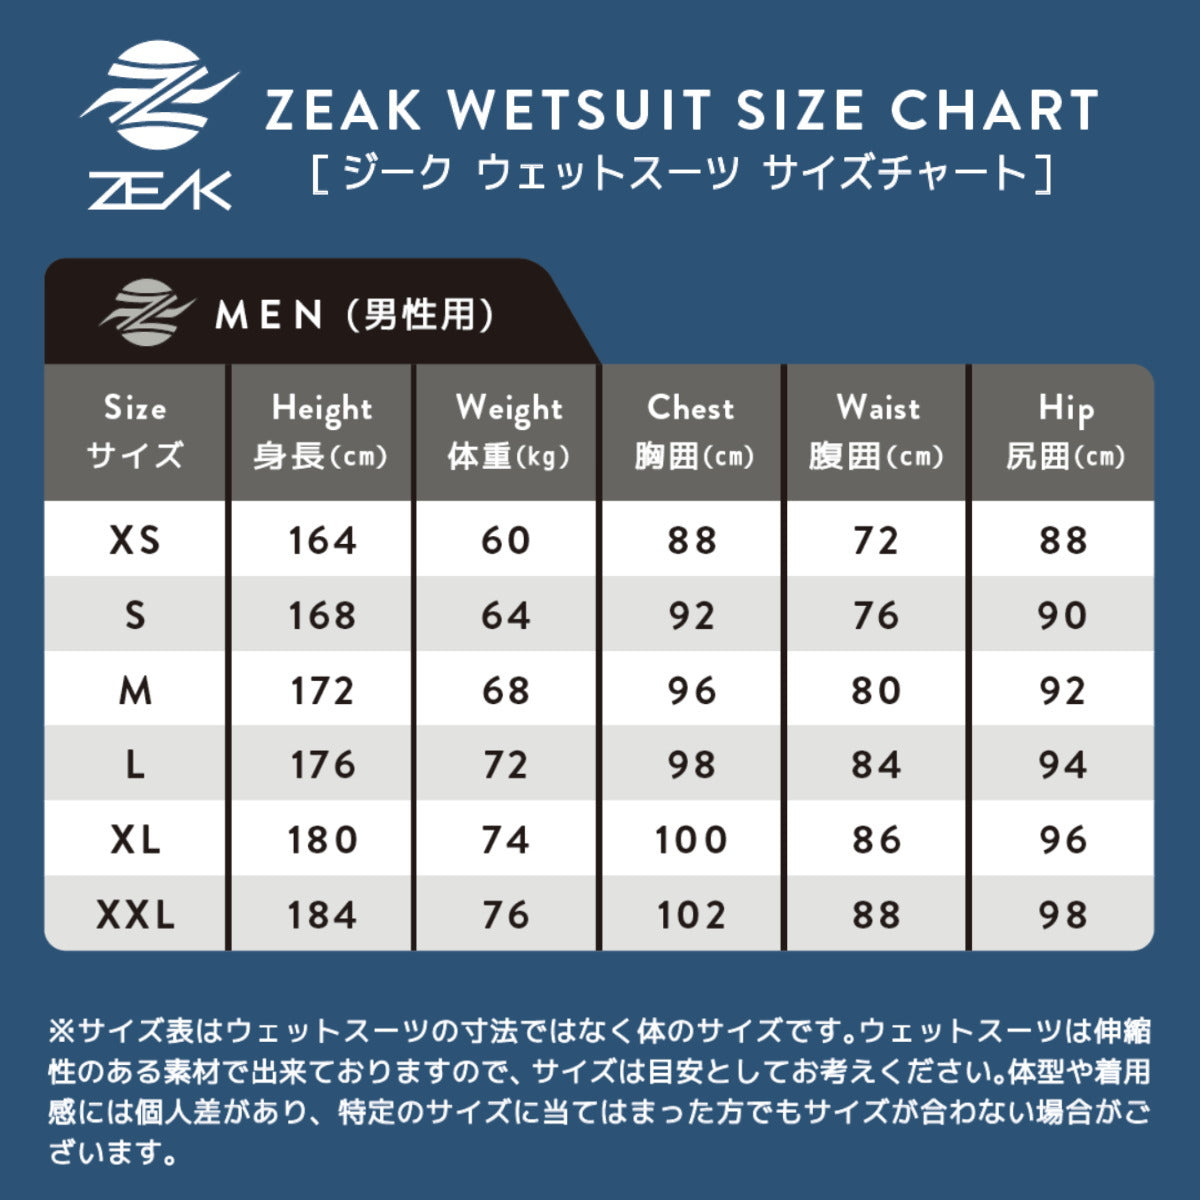 ZEAK男性用ロングジョン (3mm) ウエットスーツ